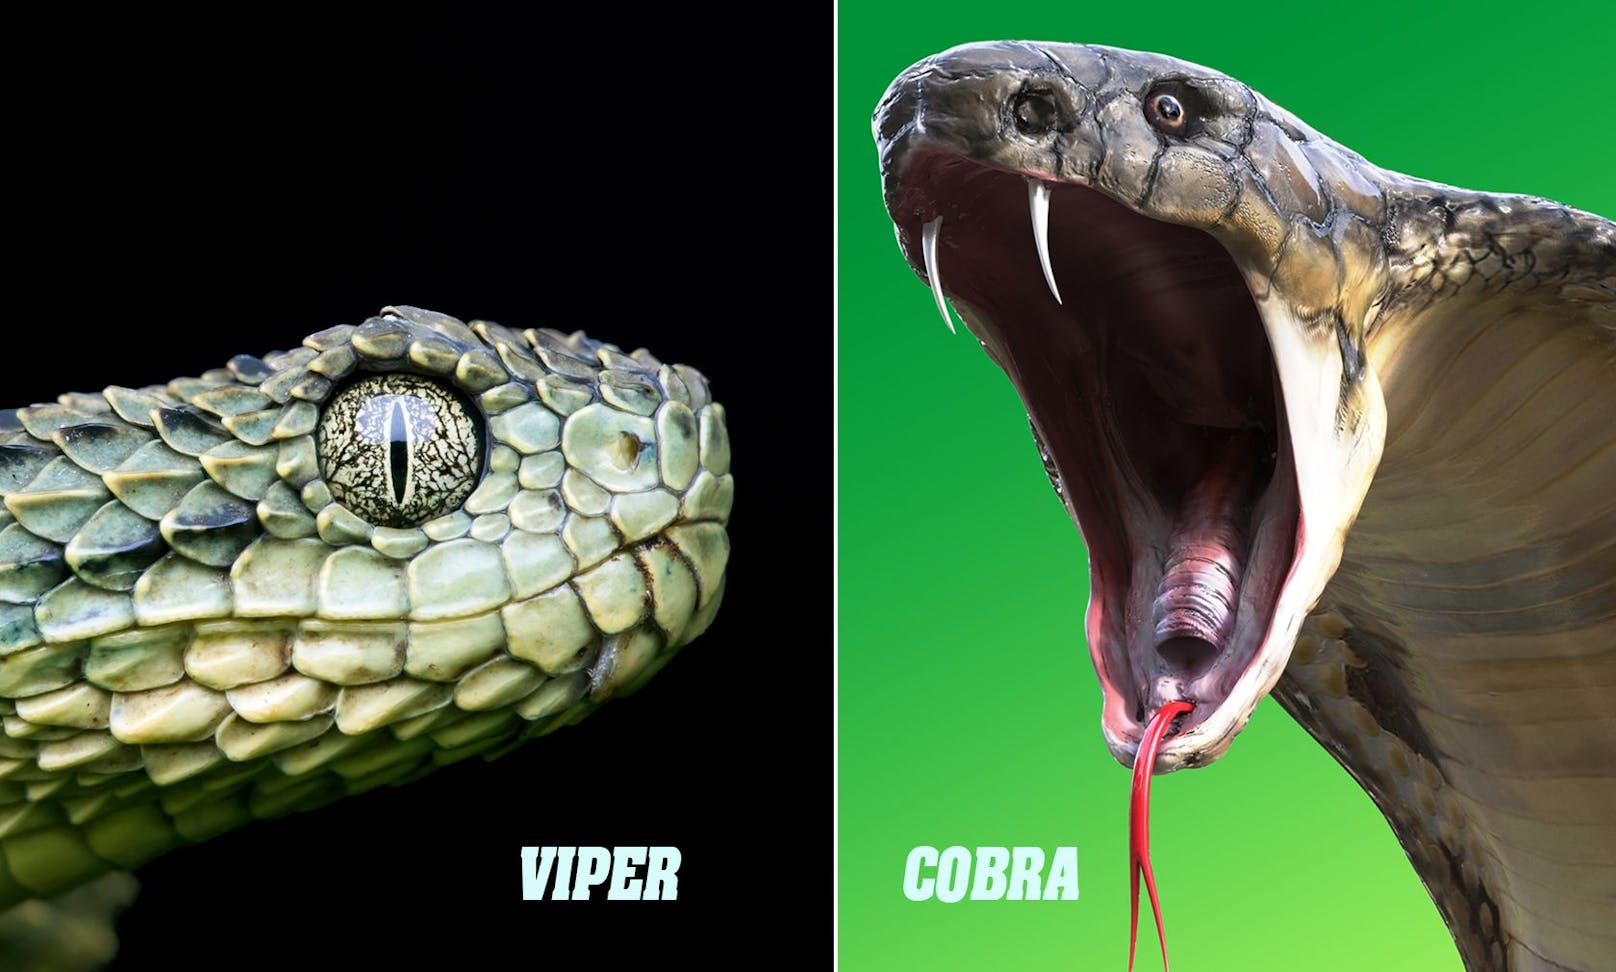 Obwohl die <strong>Cobra</strong> viel größer als die <strong>Viper</strong> ist, ist hier die kleine Giftschlange klar im Vorteil. Eine Viper iniiziert innerhalb von 79 Millisekunden etwa 50 Milligramm Gift - dies reicht für ein Pferd und mindestens fünf Cobras. Das Gift lähmt das Kreislaufsystem sofort und die Cobra würde wohl verlieren. <br>